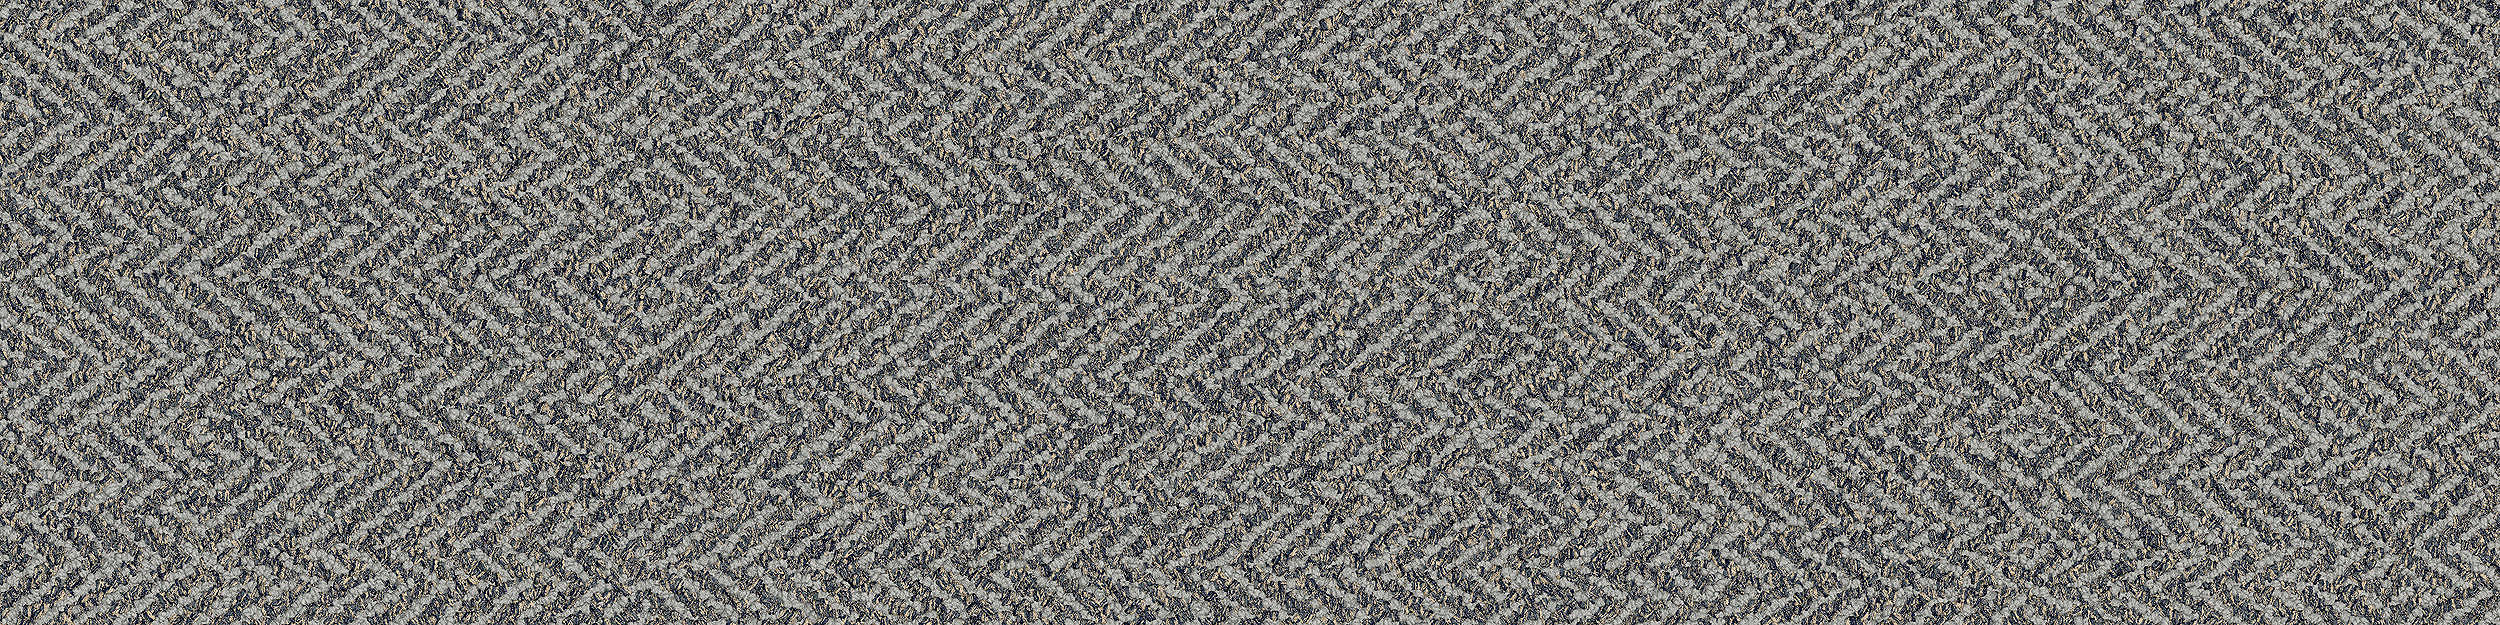 Third Space 308 Carpet Tile in Mist numéro d’image 6